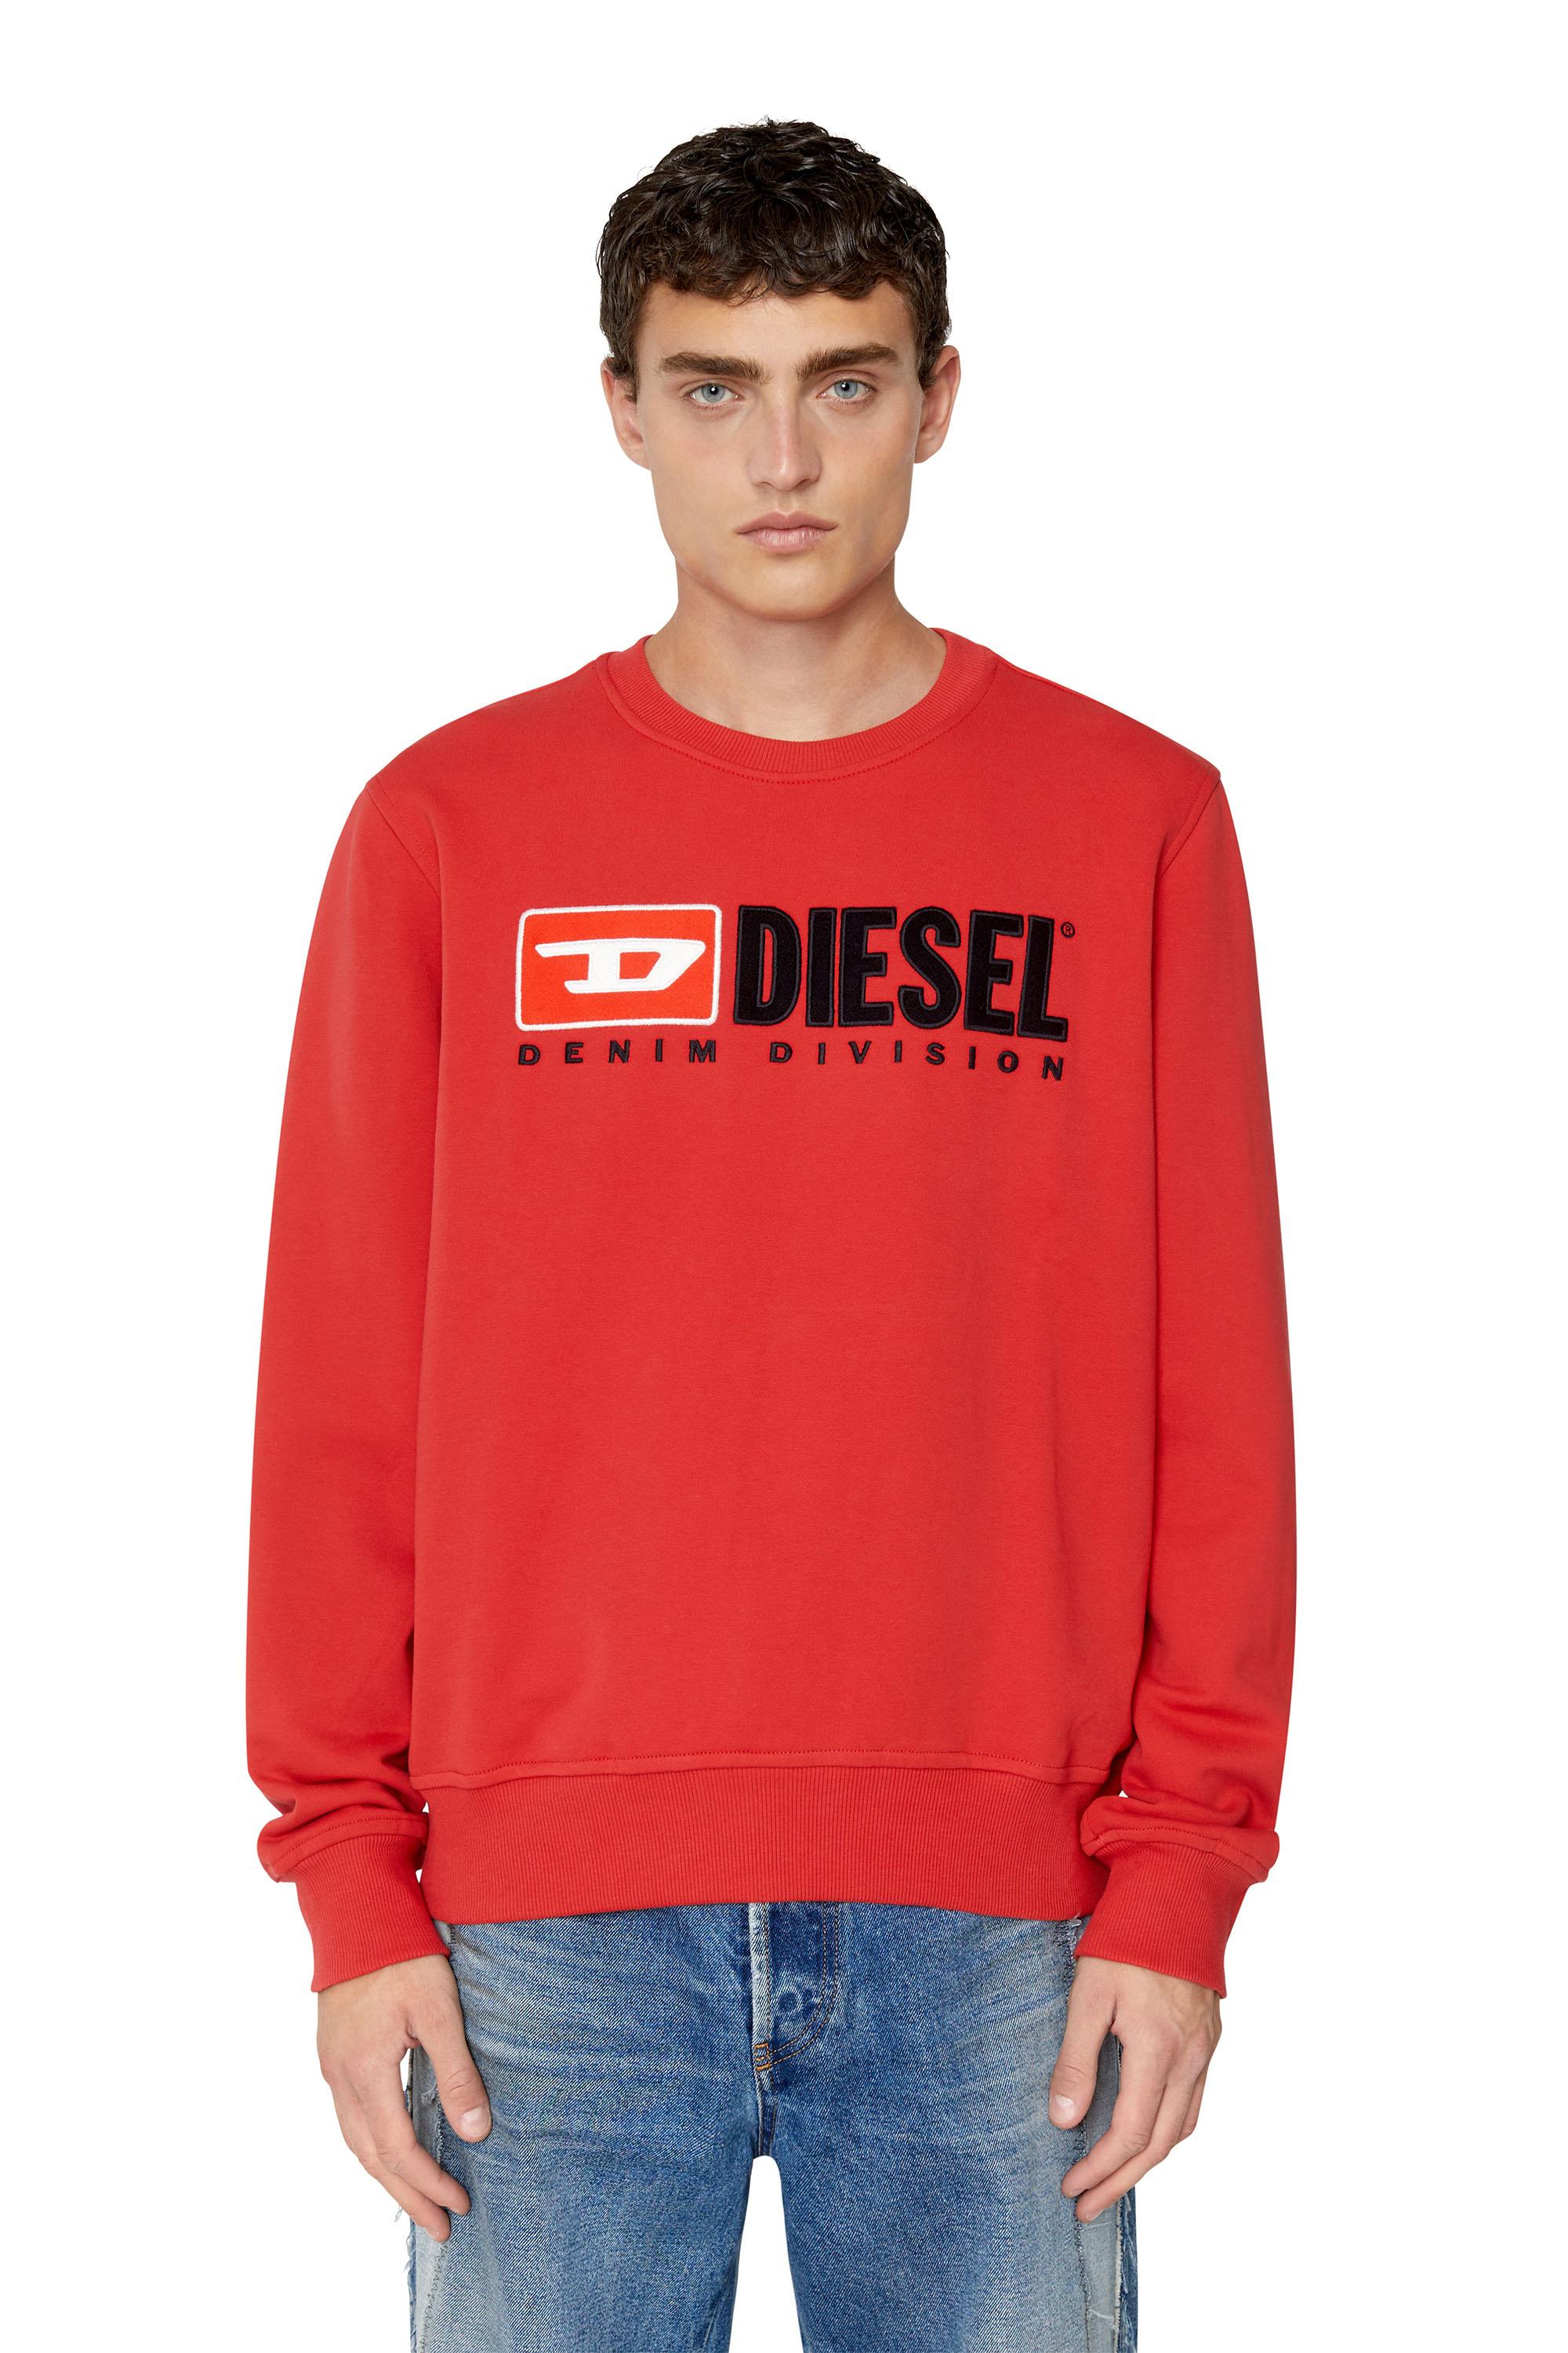 Diesel - S-GINN-DIV, Rojo - Image 3